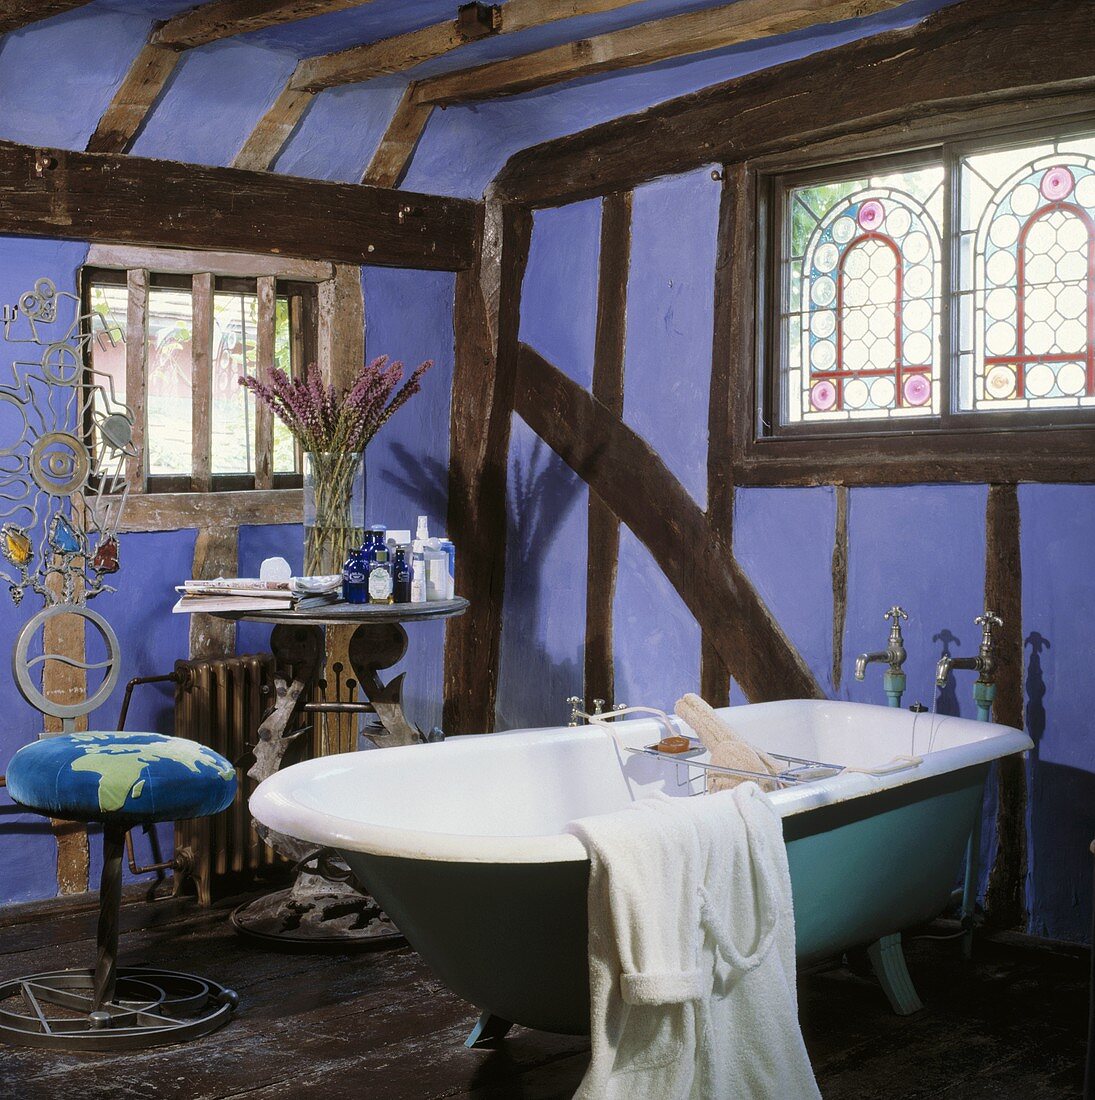 Altes Fachwerk mit lavendelfarbener Ausfachung und bunten Bleiglasfenstern über freistehender türkisfarbener Badewanne und Lyra-Tisch